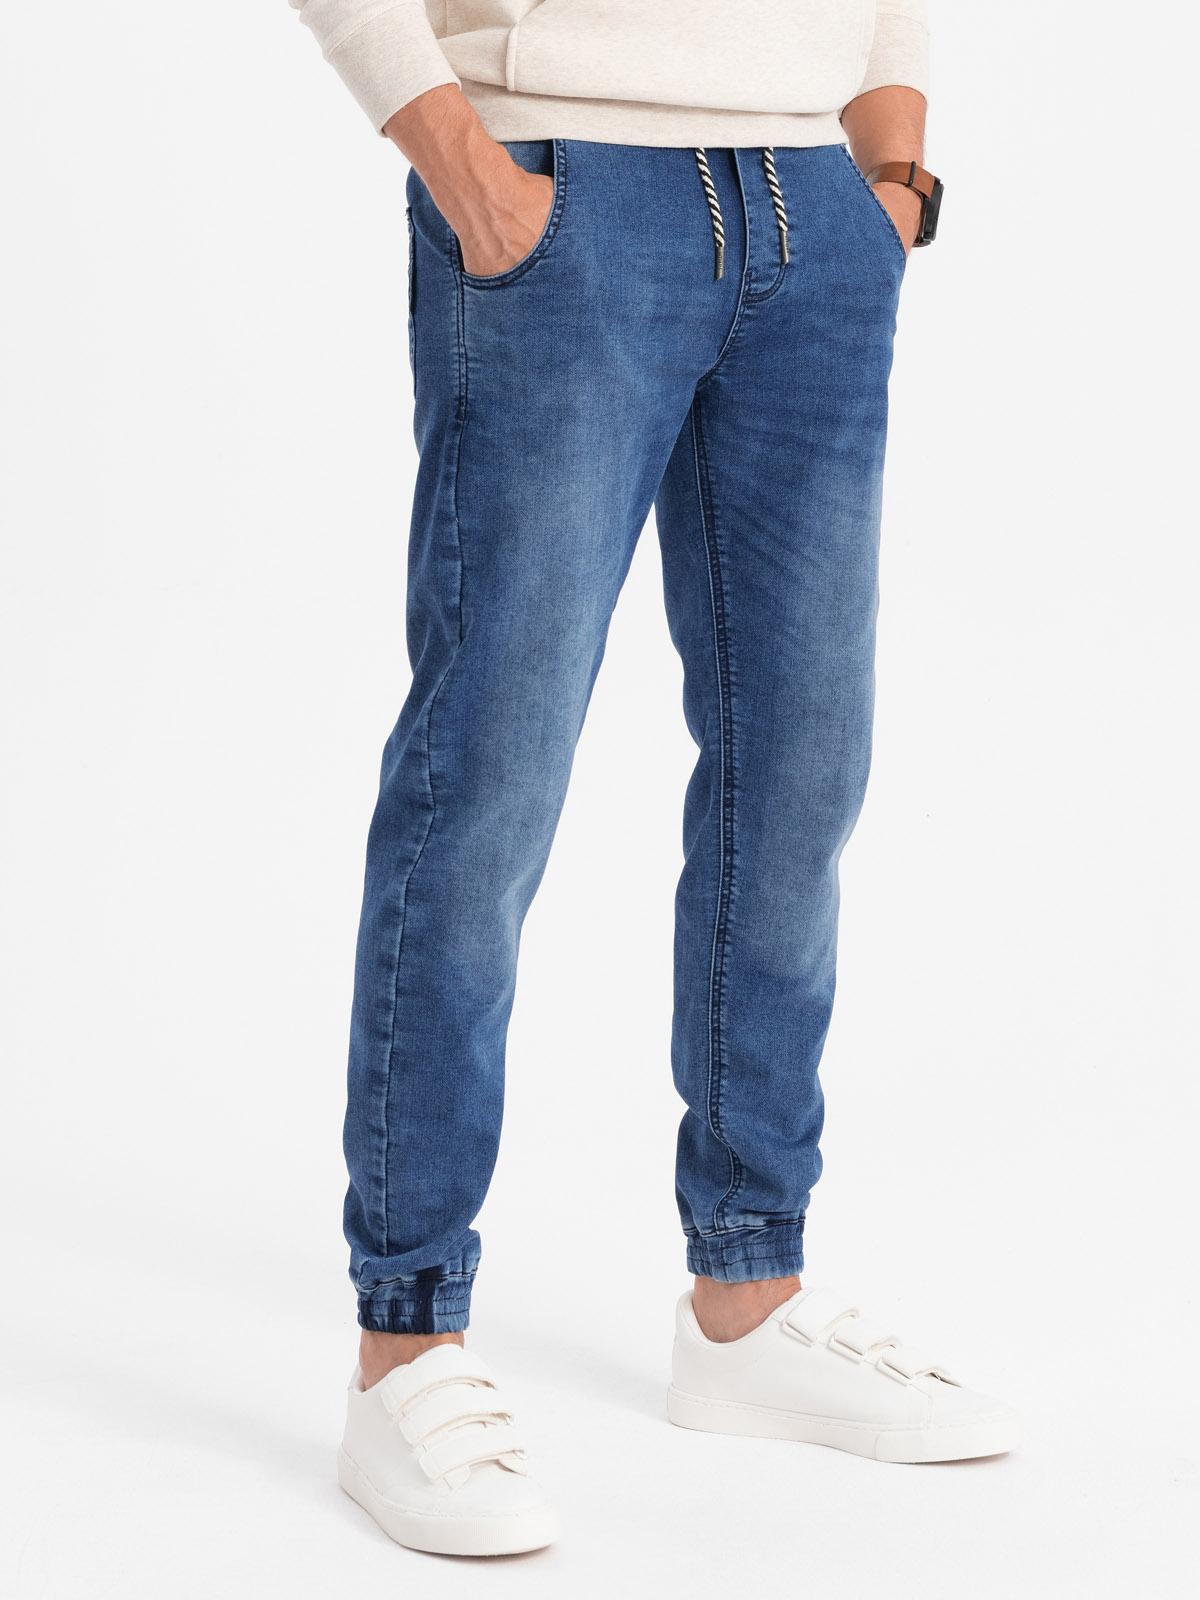 Spodnie męskie jeansowe joggery - jasnoniebieskie OM-PADJ-0106